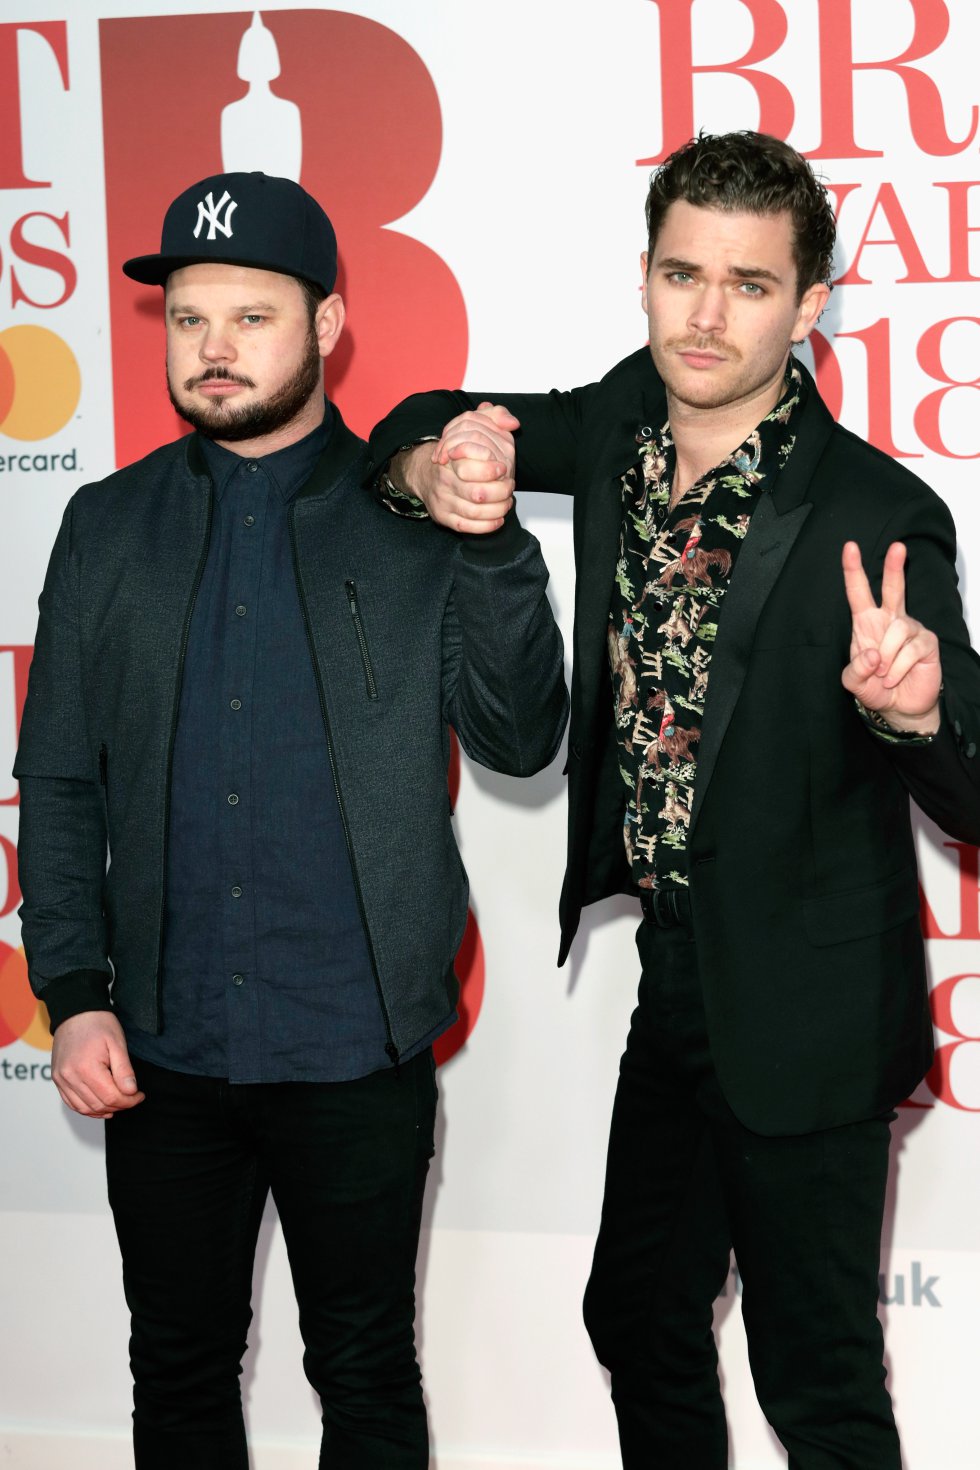 Las rosas blancas invaden la alfombra roja de los Brit Awards